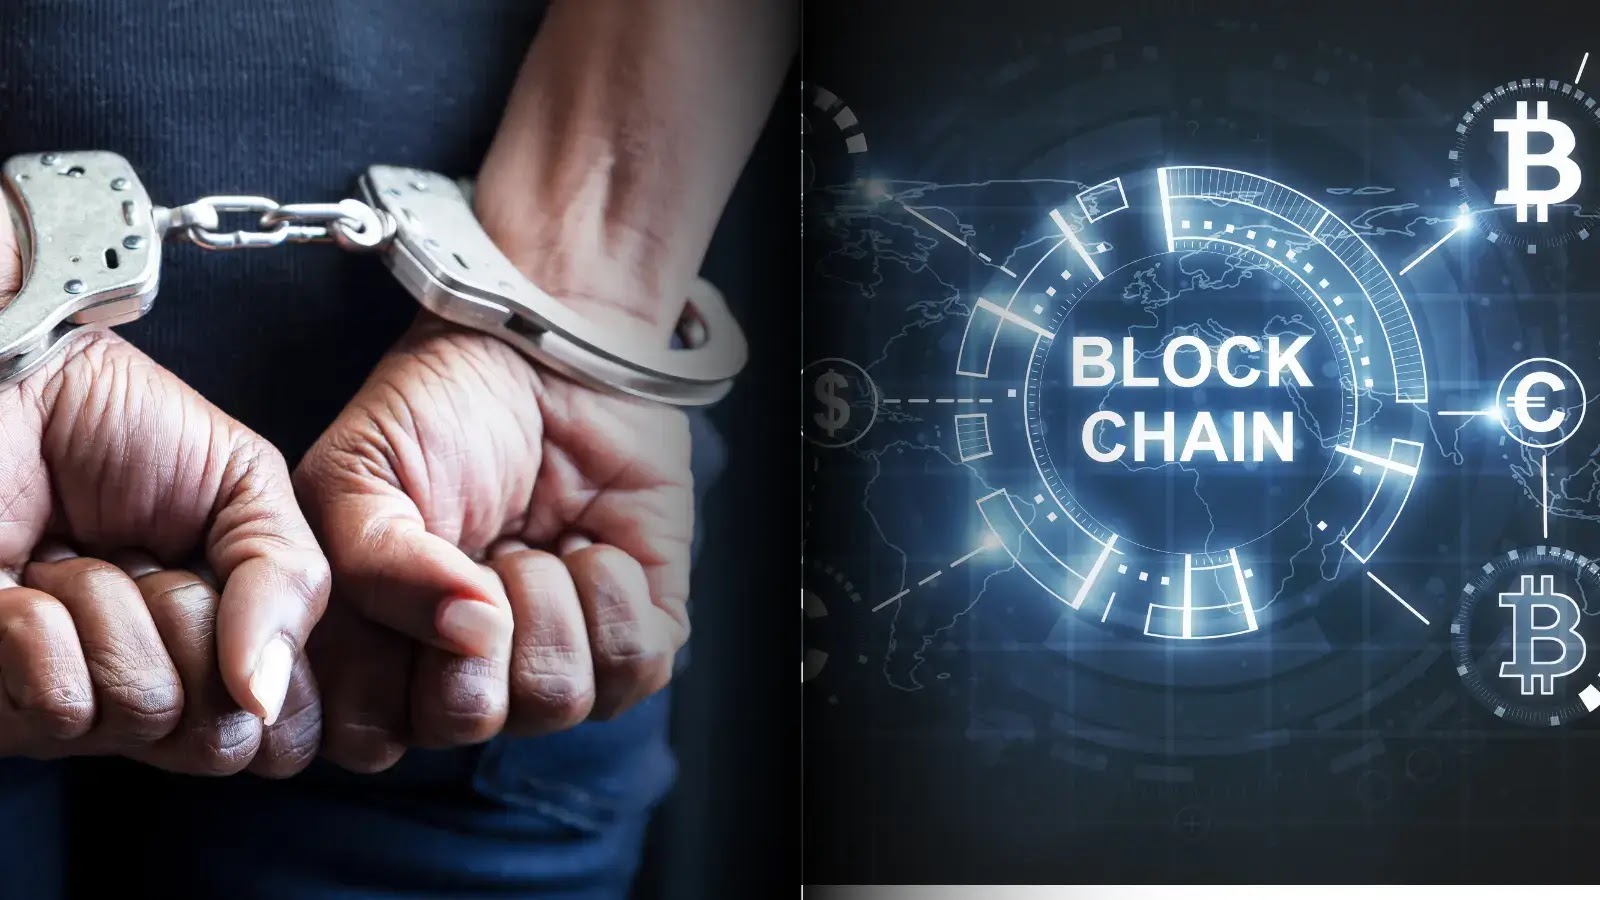 İki Kardeş Blockchain'e Saldırıp M Çalmaktan Tutuklandı